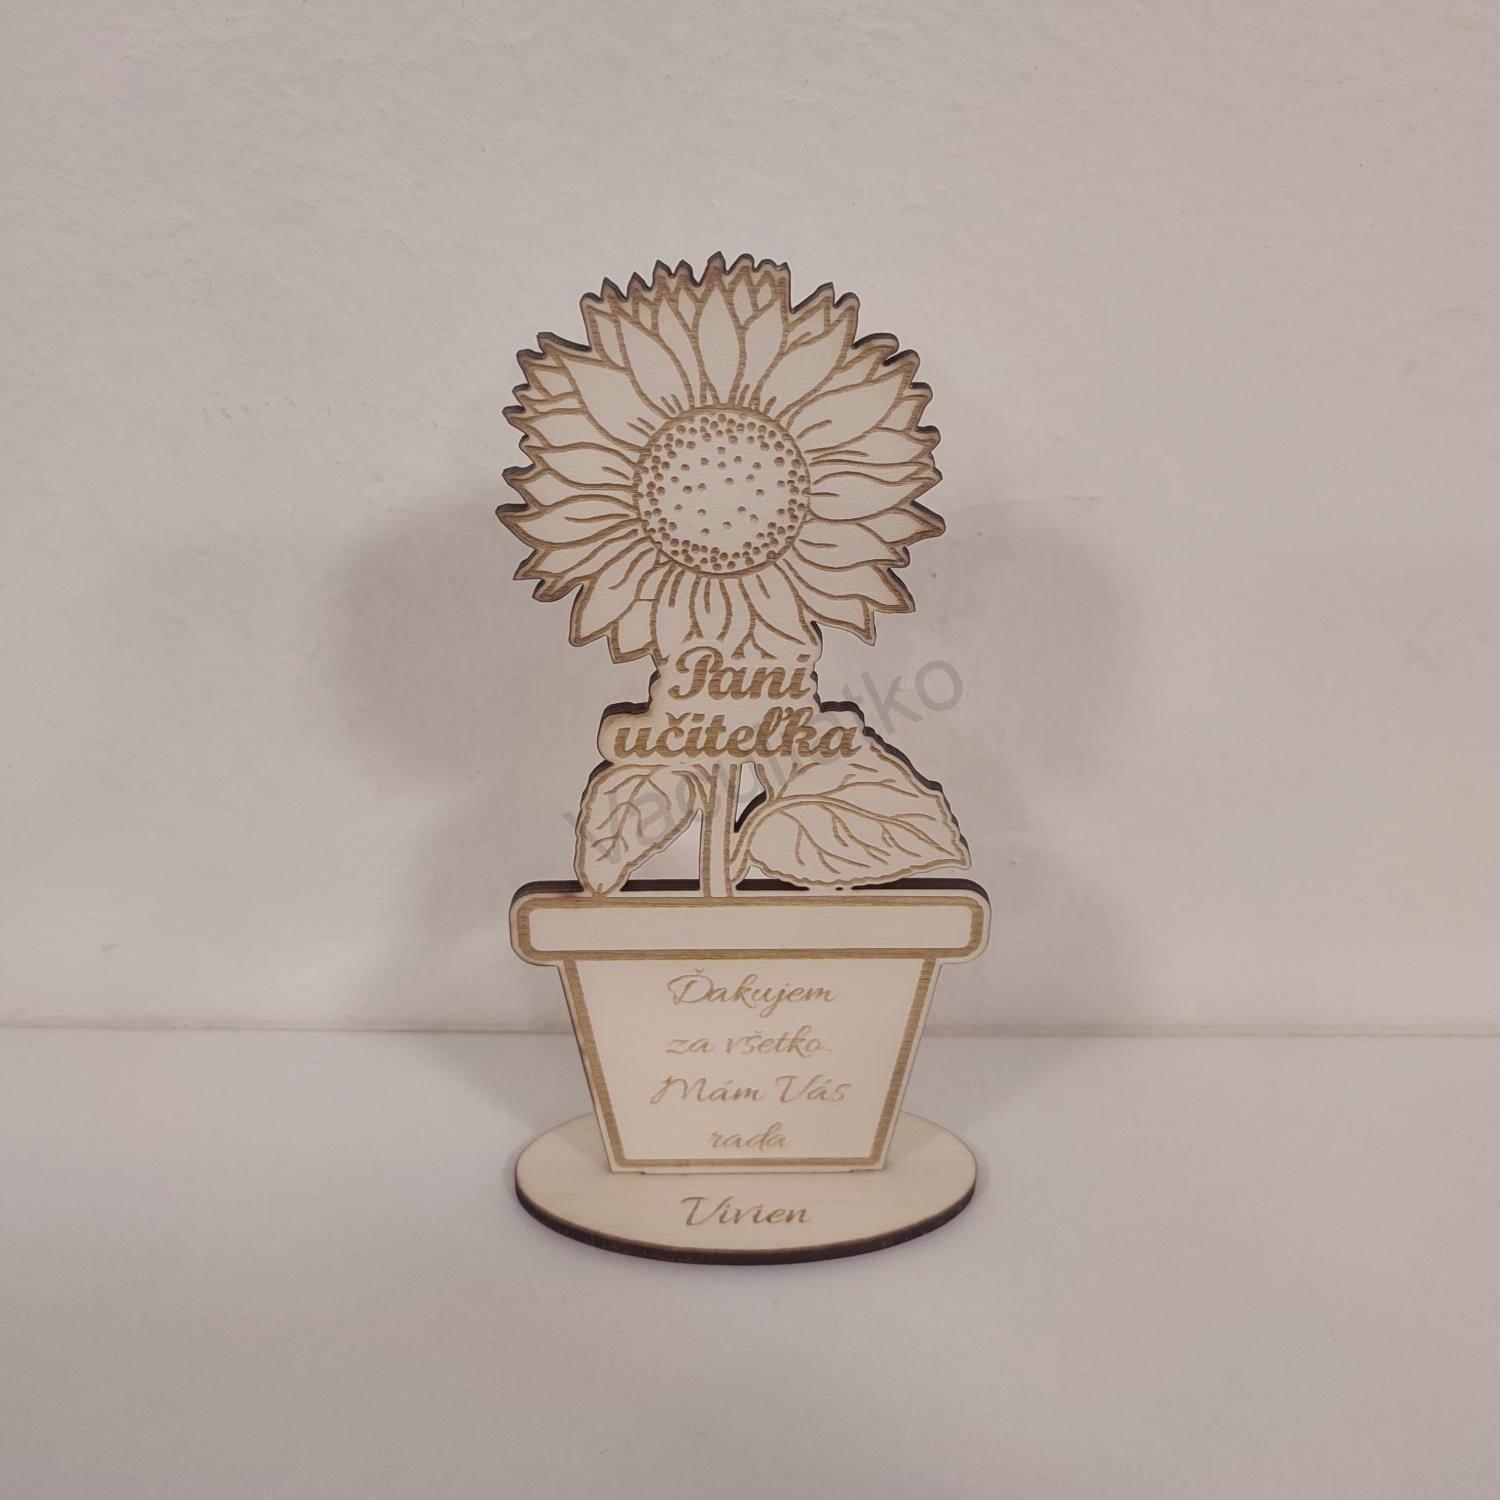 Drevená dekorácia - kvet s textom 9x17cm "Pani učiteľka Ďakujem za všetko" meno